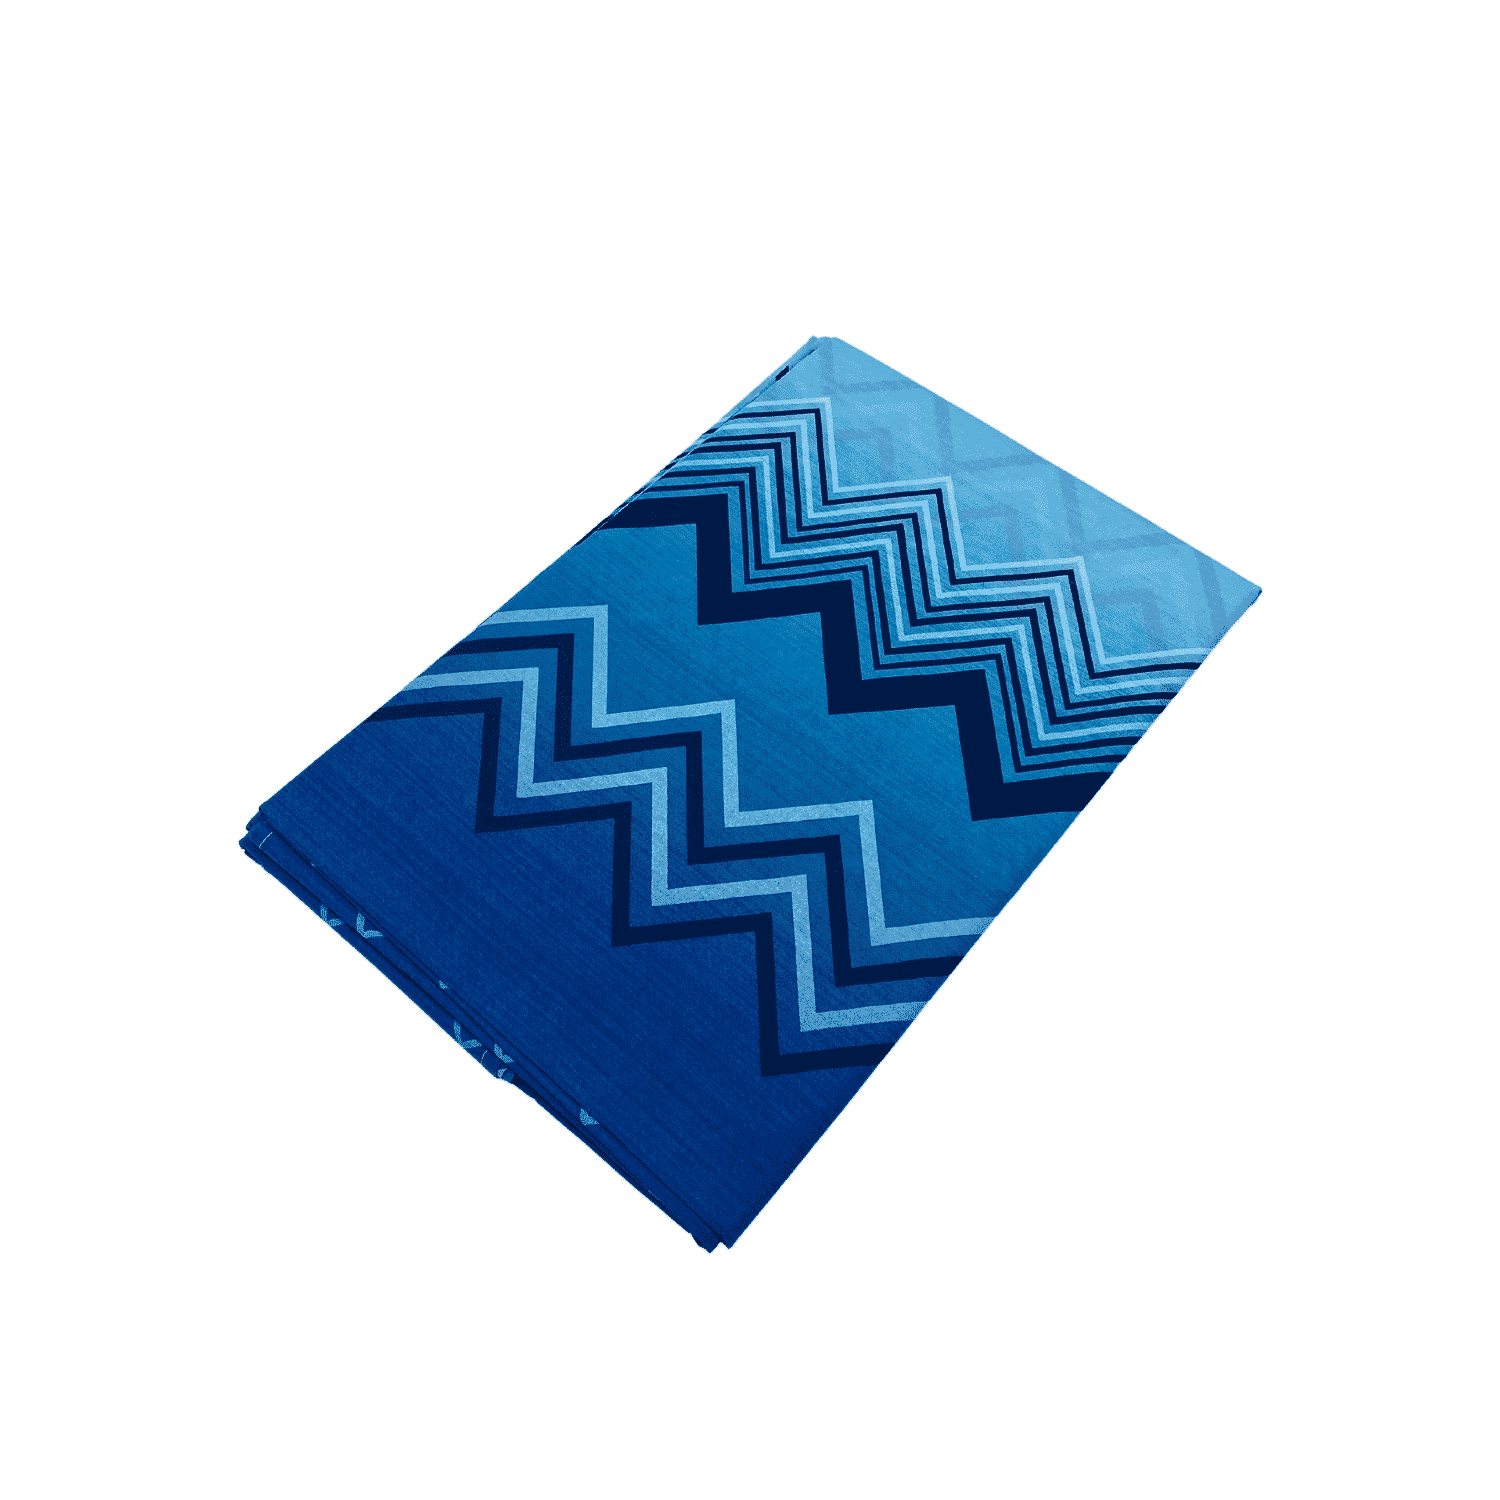 foto-zigzag-blu-telo-arredo-copritutto-tuttofare-quadrifoglio-cotone-made-in-italy-1-piazza-180x300cm-2-piazze-260x300cm